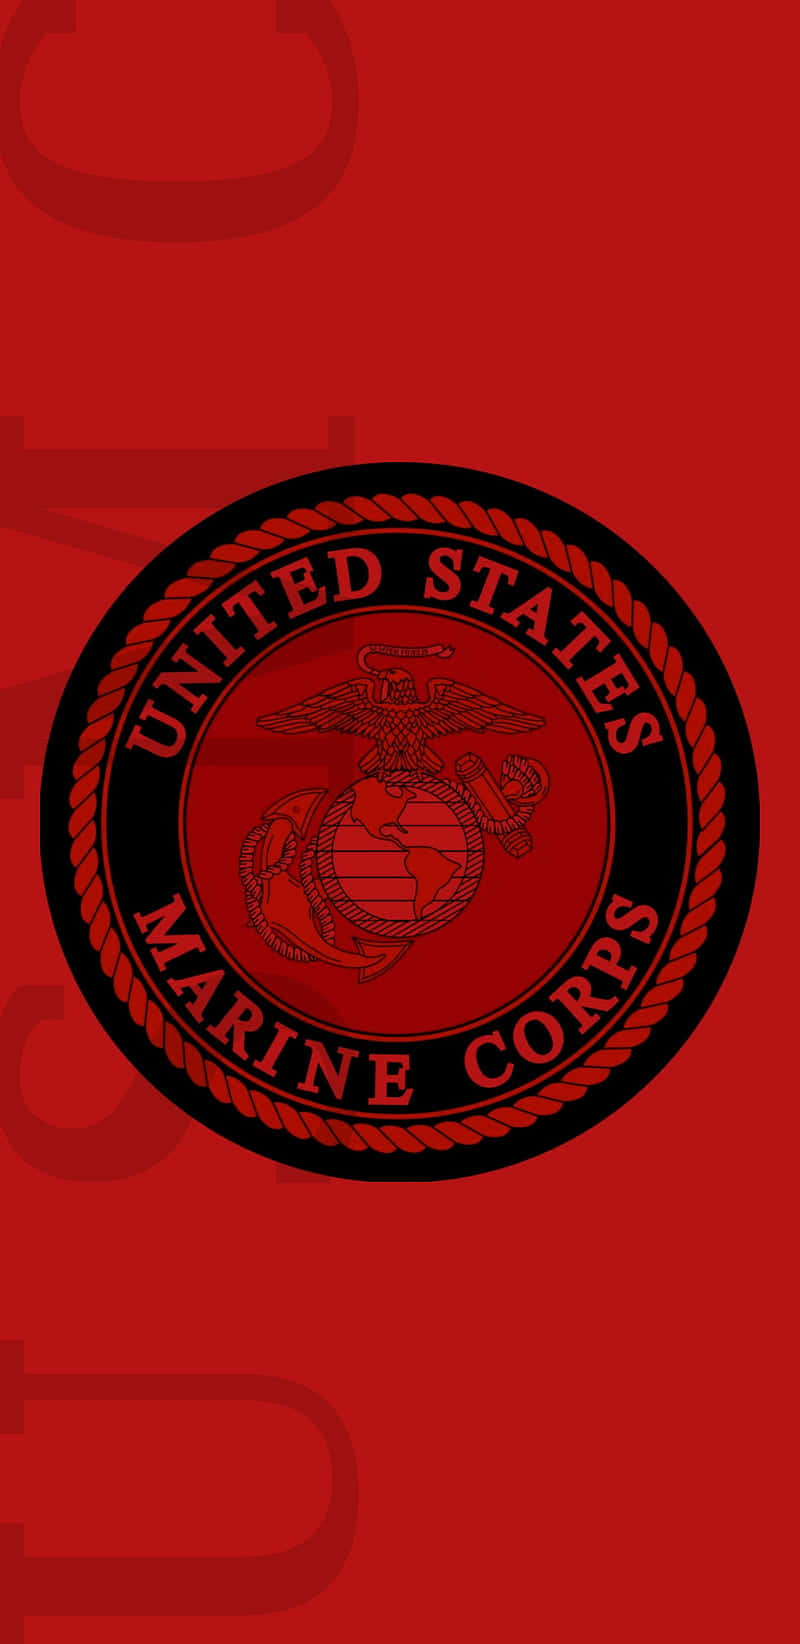 Sirviendocon Orgullo A La Nación: Cuerpo De Marines De Los Estados Unidos Fondo de pantalla